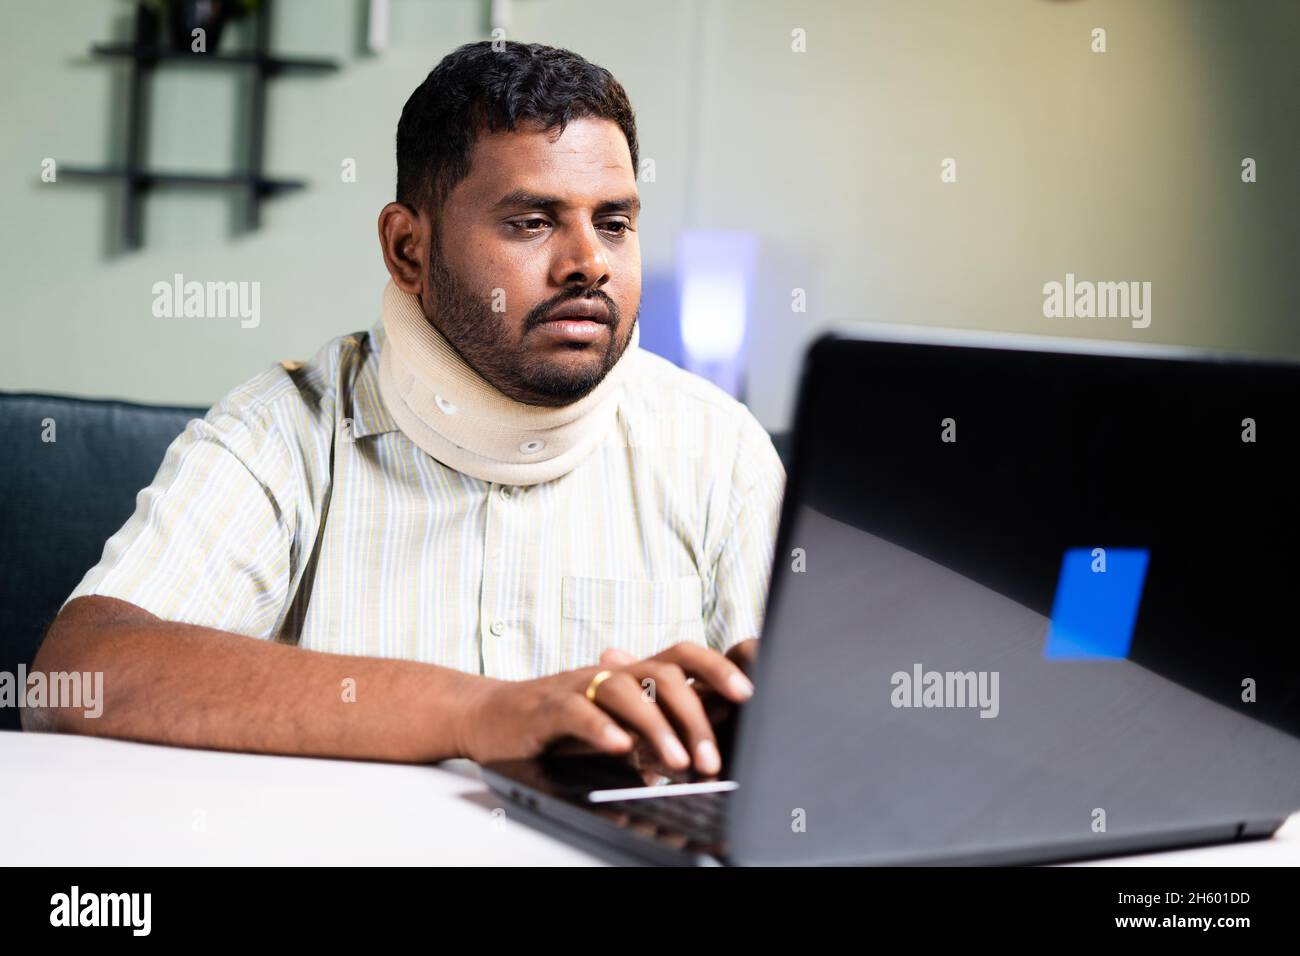 gros homme avec un corset de cou travaillant sur ordinateur portable en raison de douleurs au cou pendant le travail à la maison - concept de travail excessif et des habitudes alimentaires malsaines pendant le coronavirus Banque D'Images